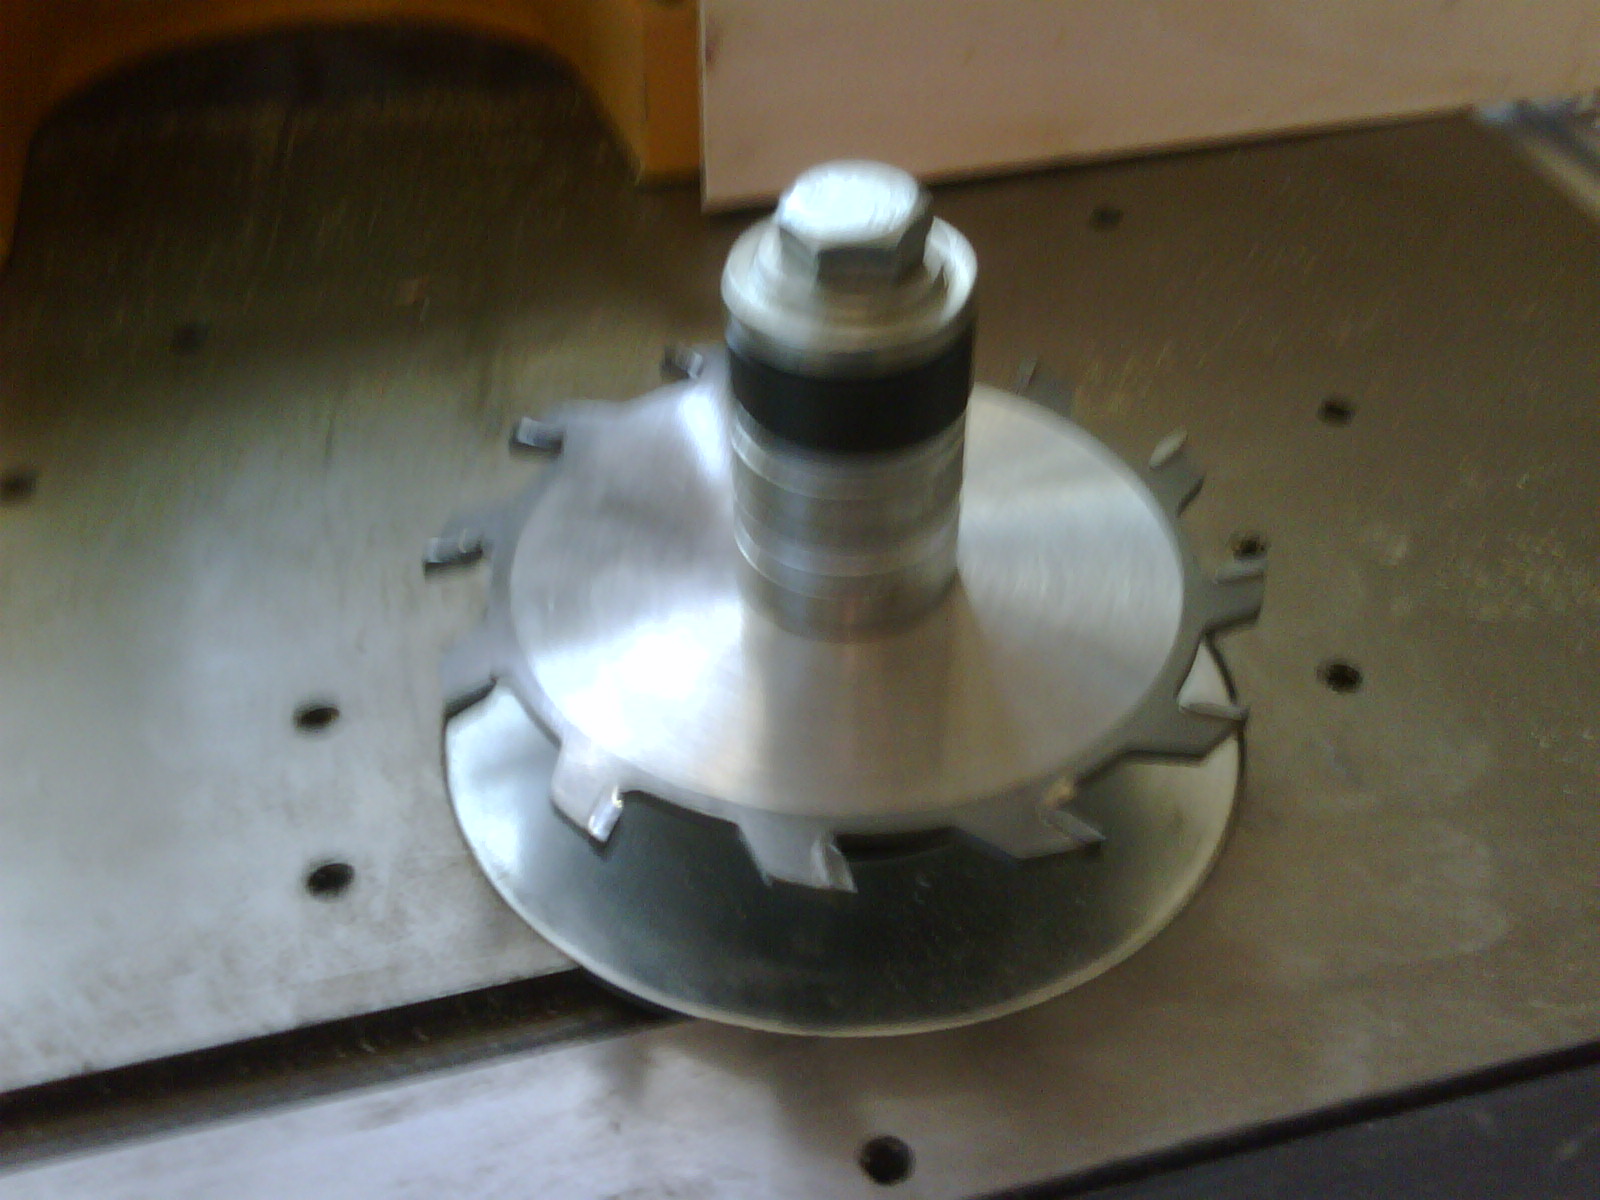 Image of spindle moulder